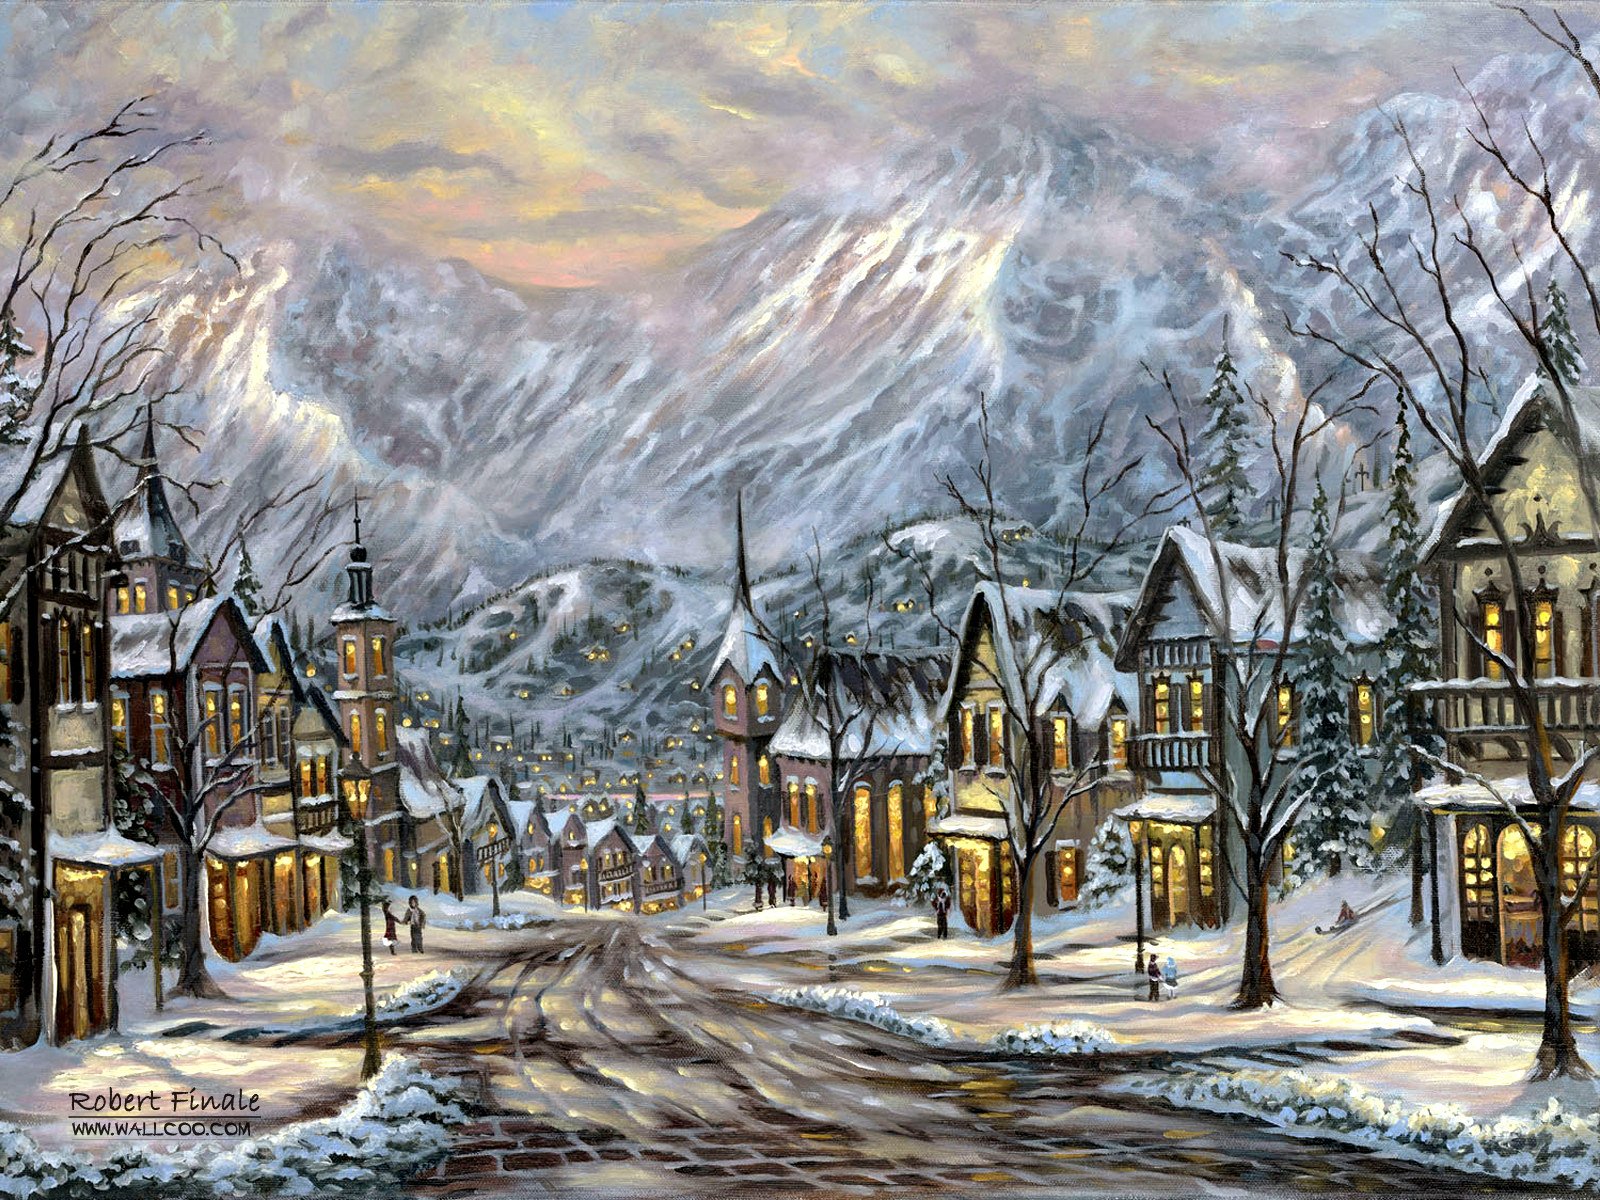 Winter in Austrian Mountain Village Finale by Robert